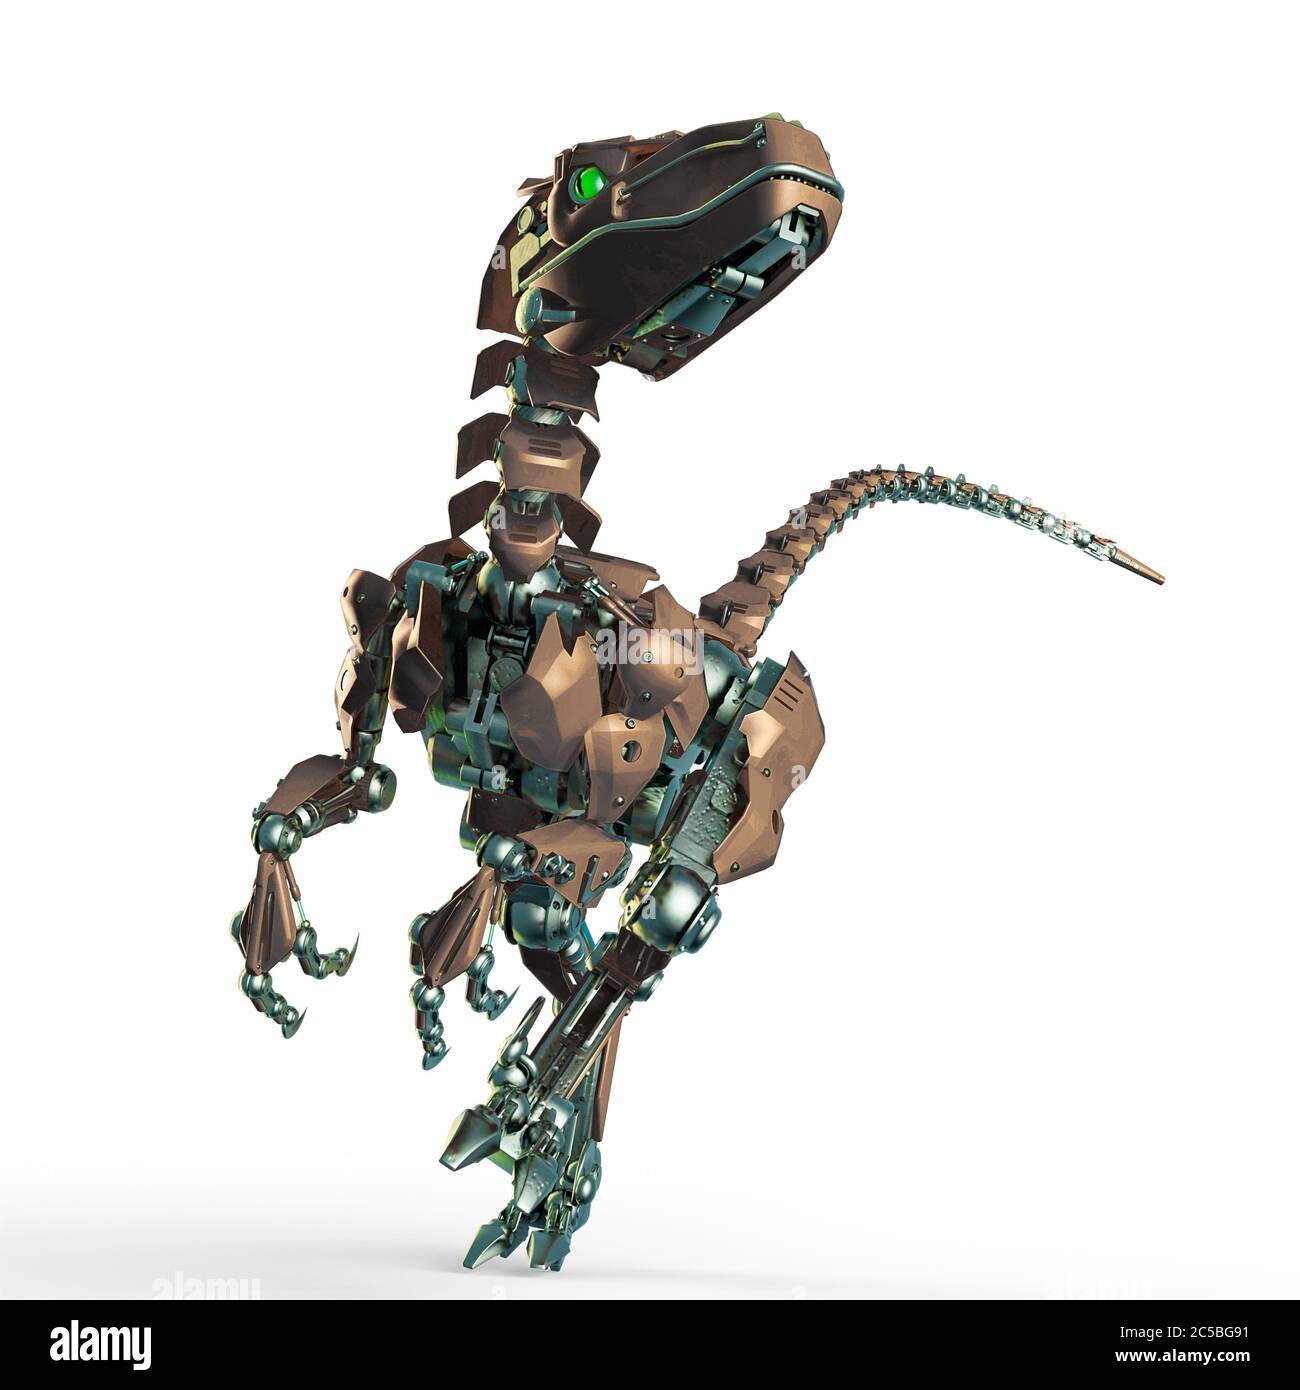 Robot Dinosaur Images – Parcourir 4,819 le catalogue de photos